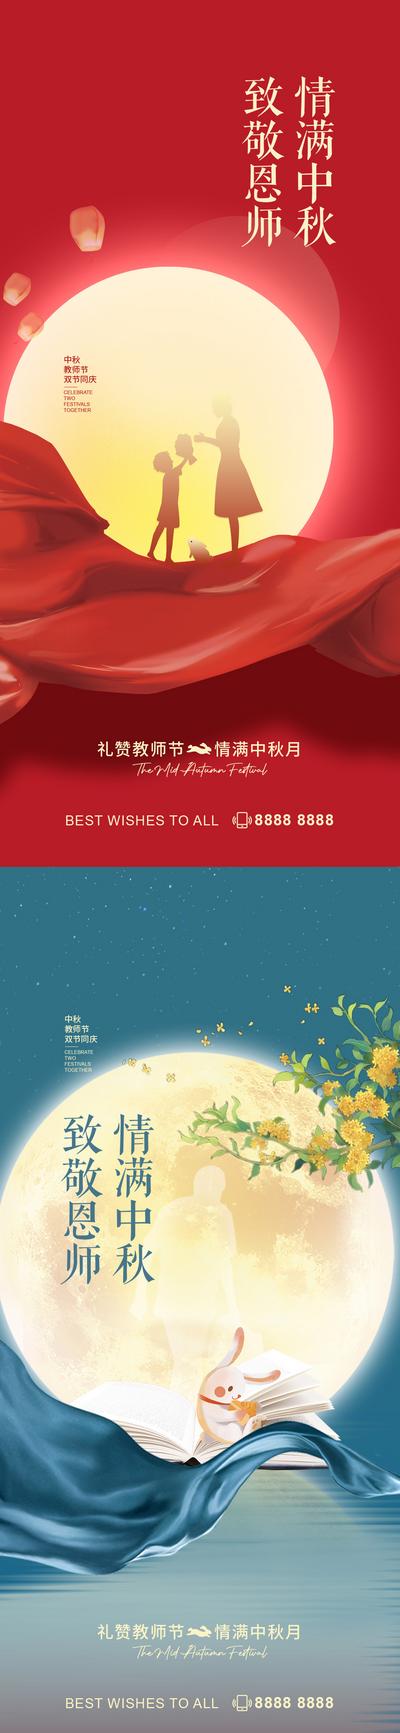 南门网 海报 中国传统节日 公历节日 中秋节 教师节 圆月 人物剪影 系列